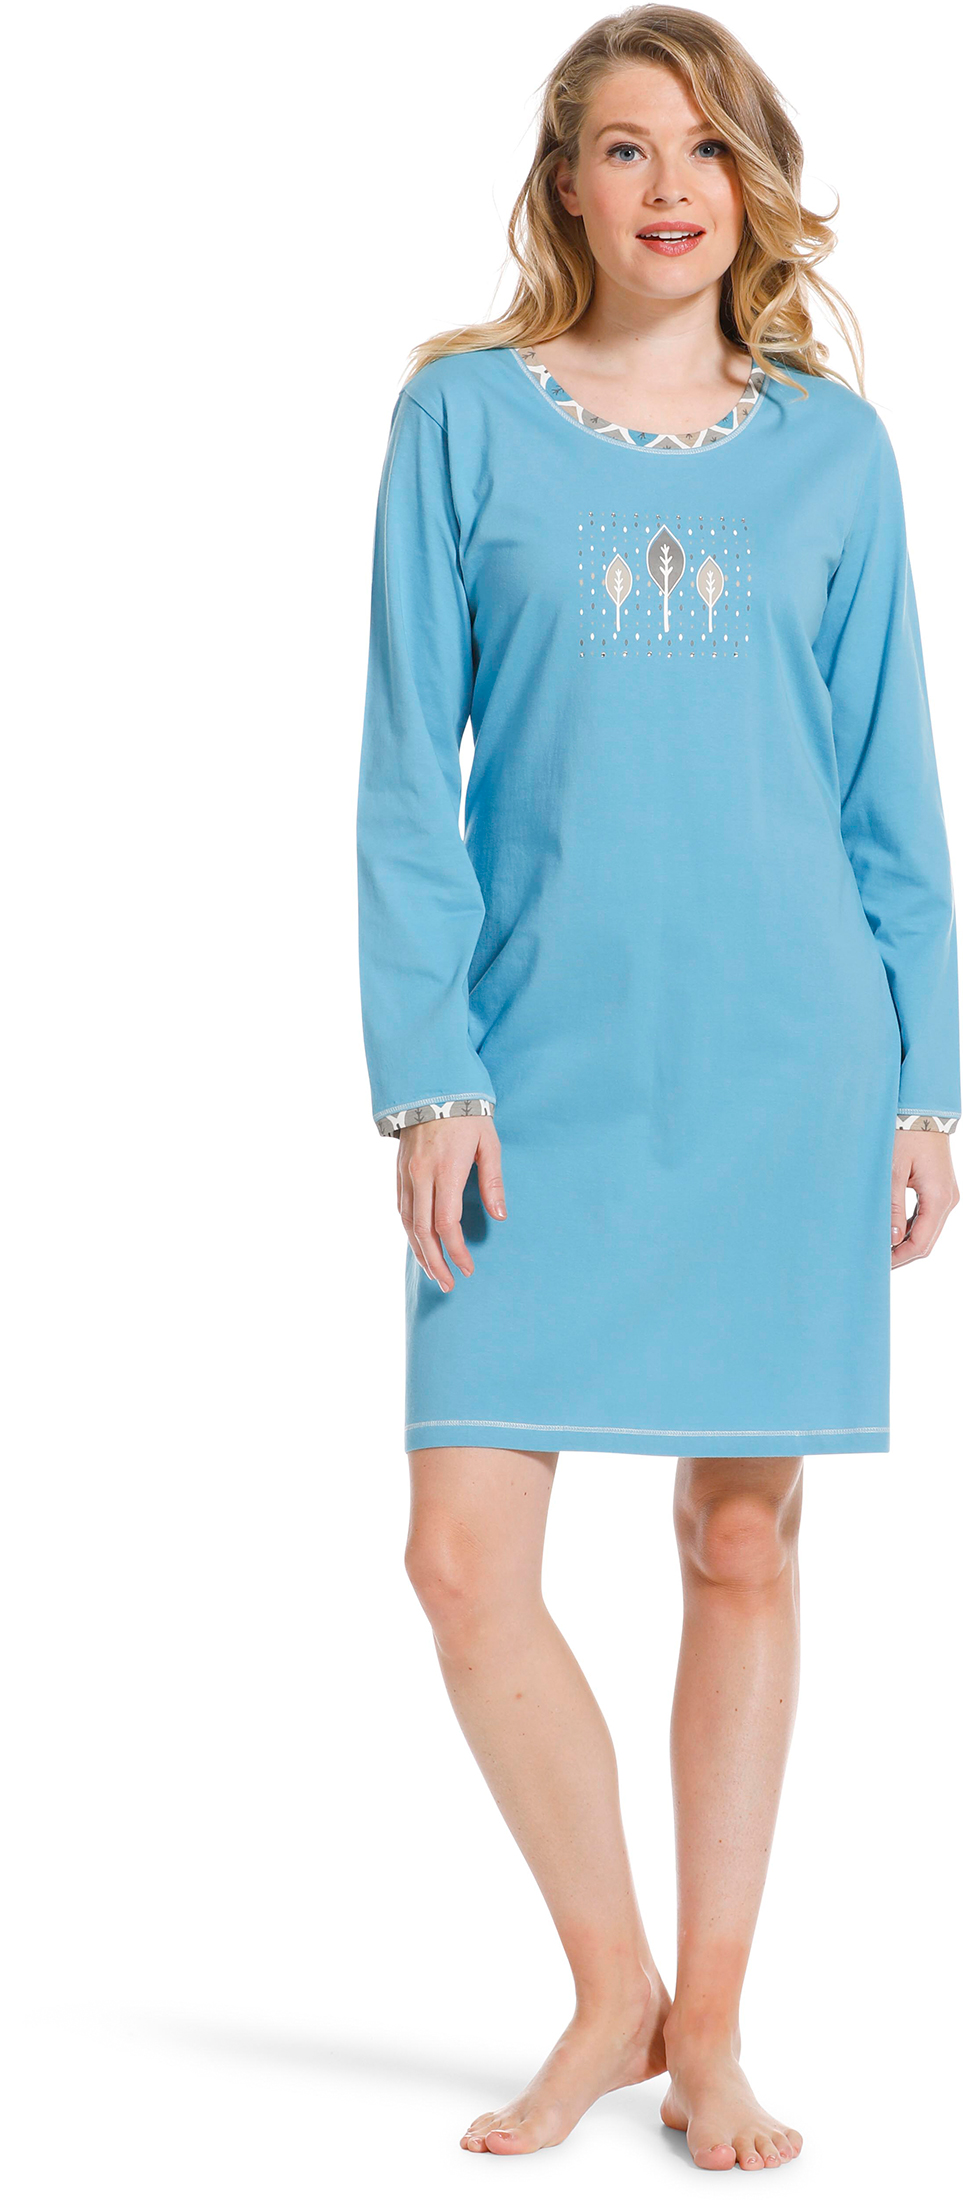 Pastunette dames nachthemd 10222-138-2 - Blauw - 52